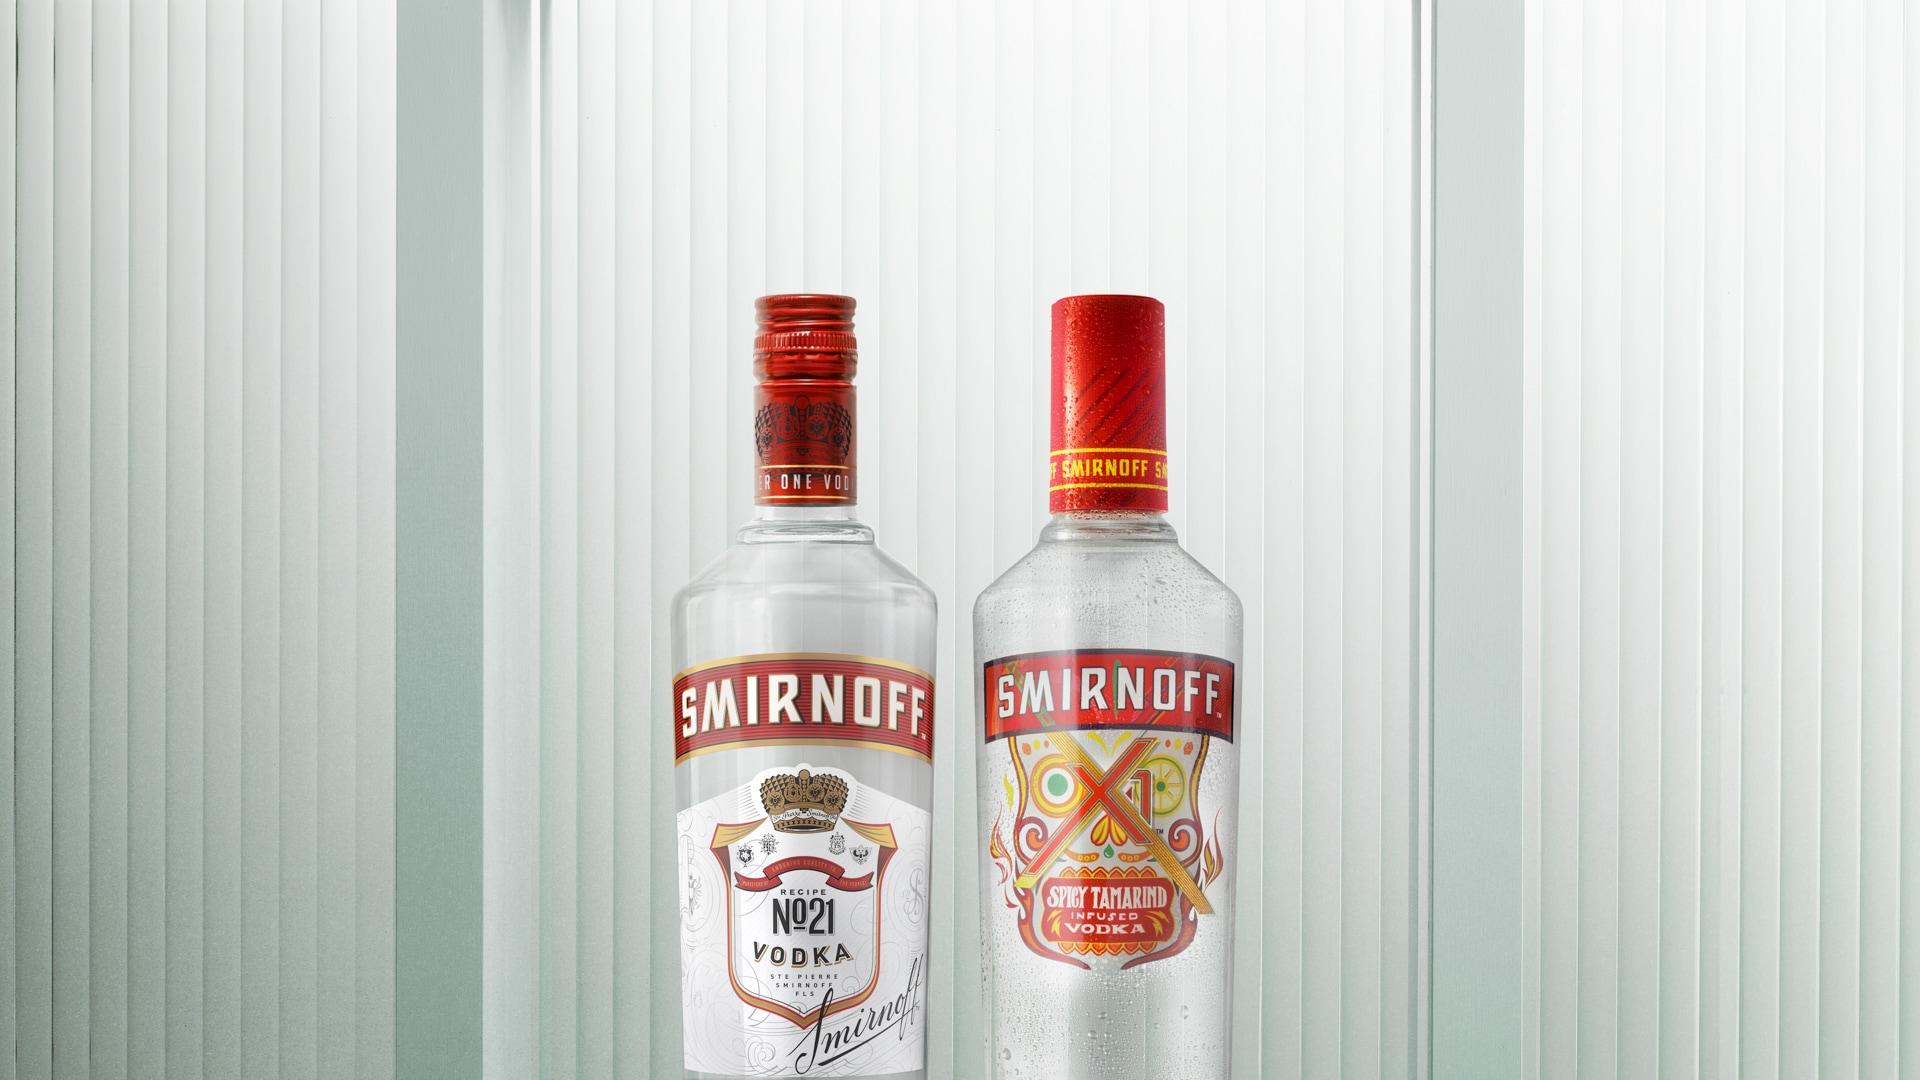 Dos productos Smirnoff